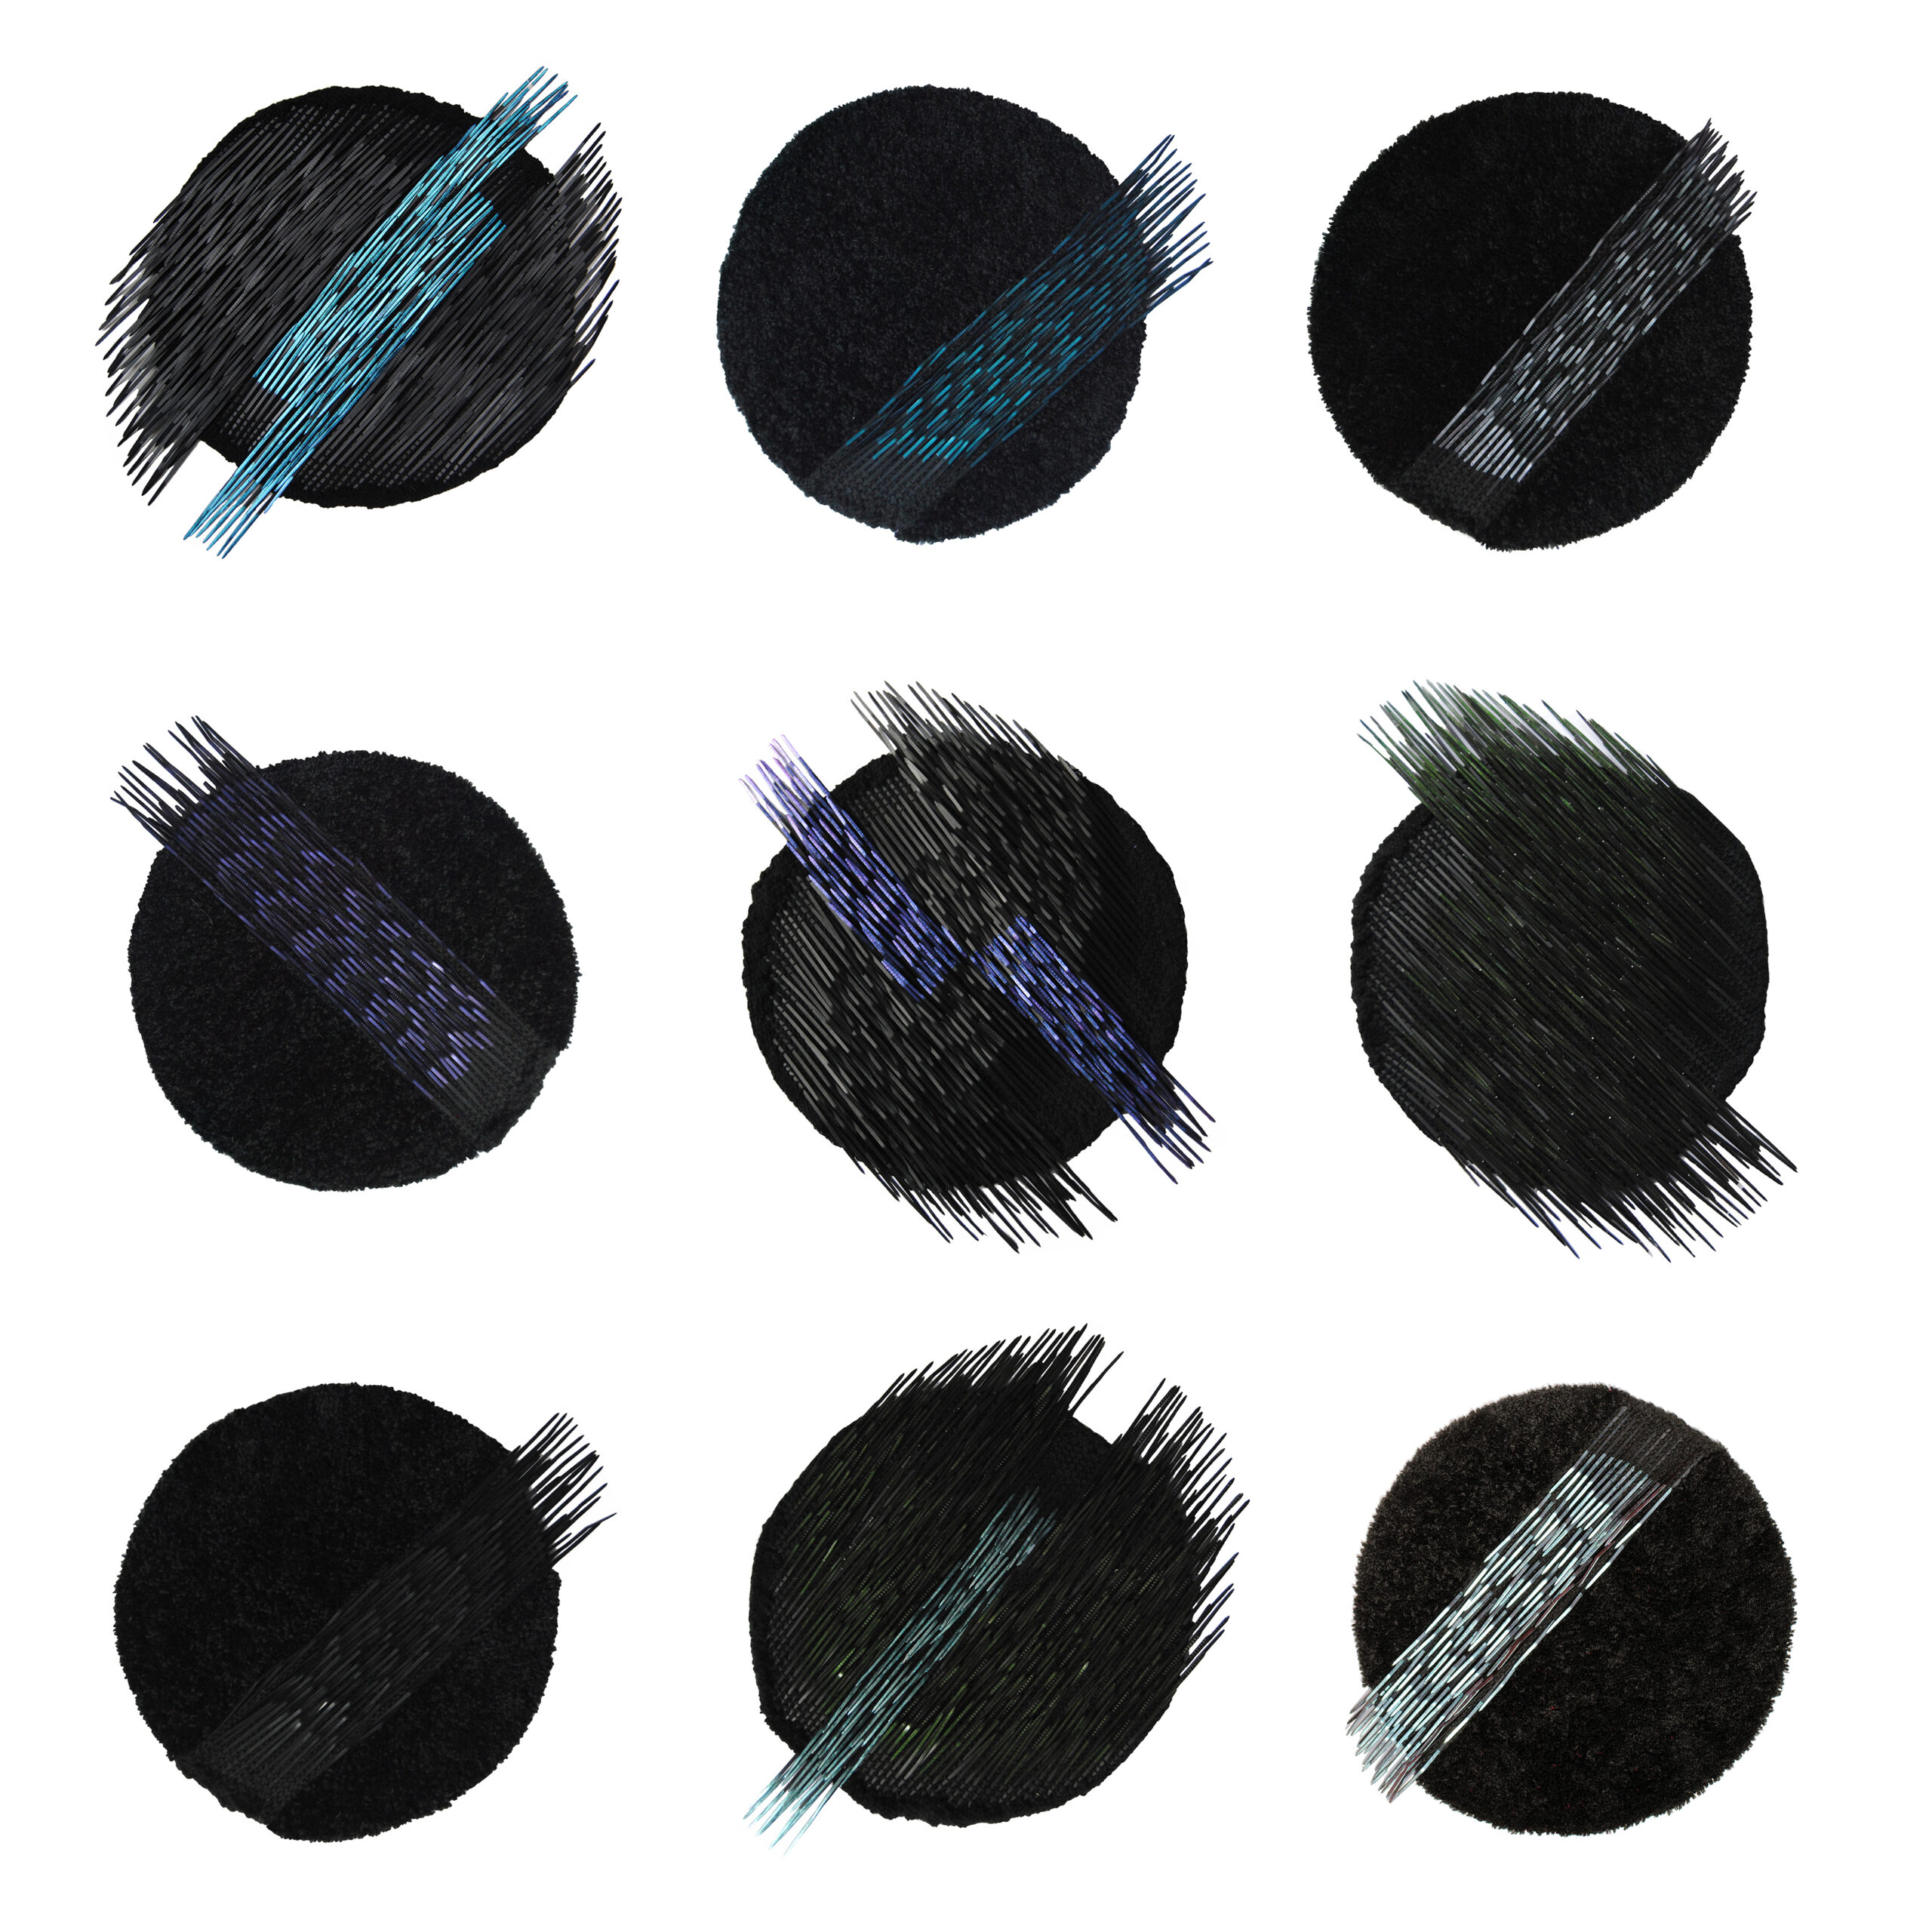 Zdjęcie pracy tkackiej Izabeli Walczak. Na zdjęciu widać dziewięć kół tej samej wielkości. Koła są czarne i widać na nich szare, połyskliwe światło. Na każdym kole widać skosy, które są jaśniejsze od kół. Skosy są koloru szarego i błękitnego.. 